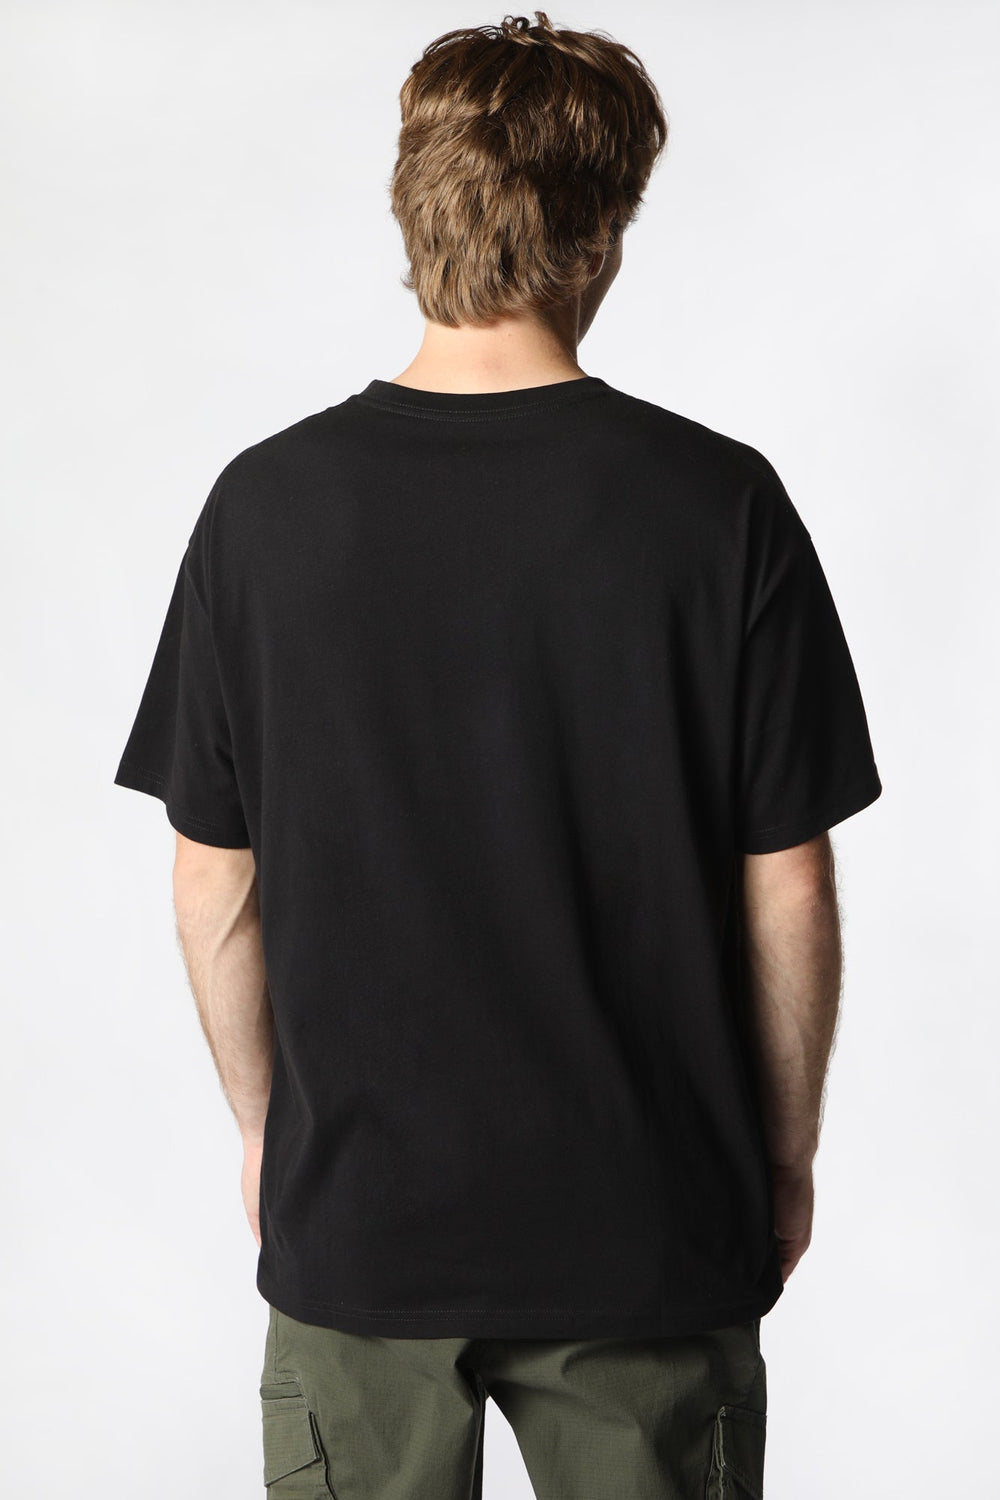 Amnesia Mens Graphic T-Shirt Black